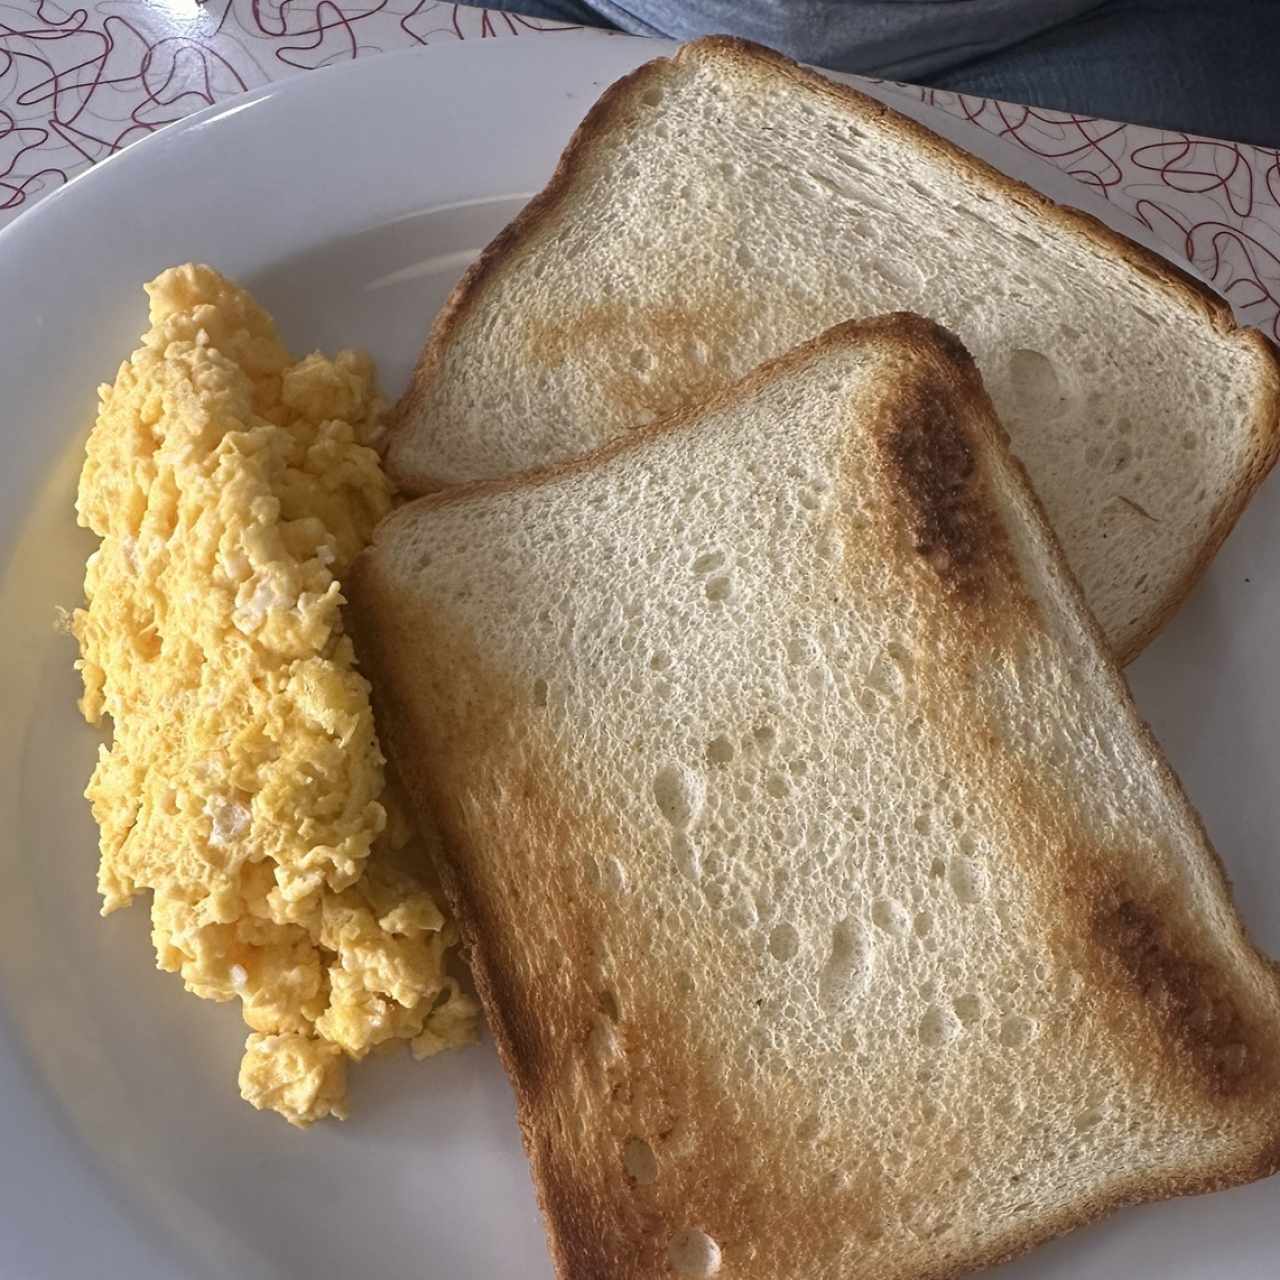 Egg n toast